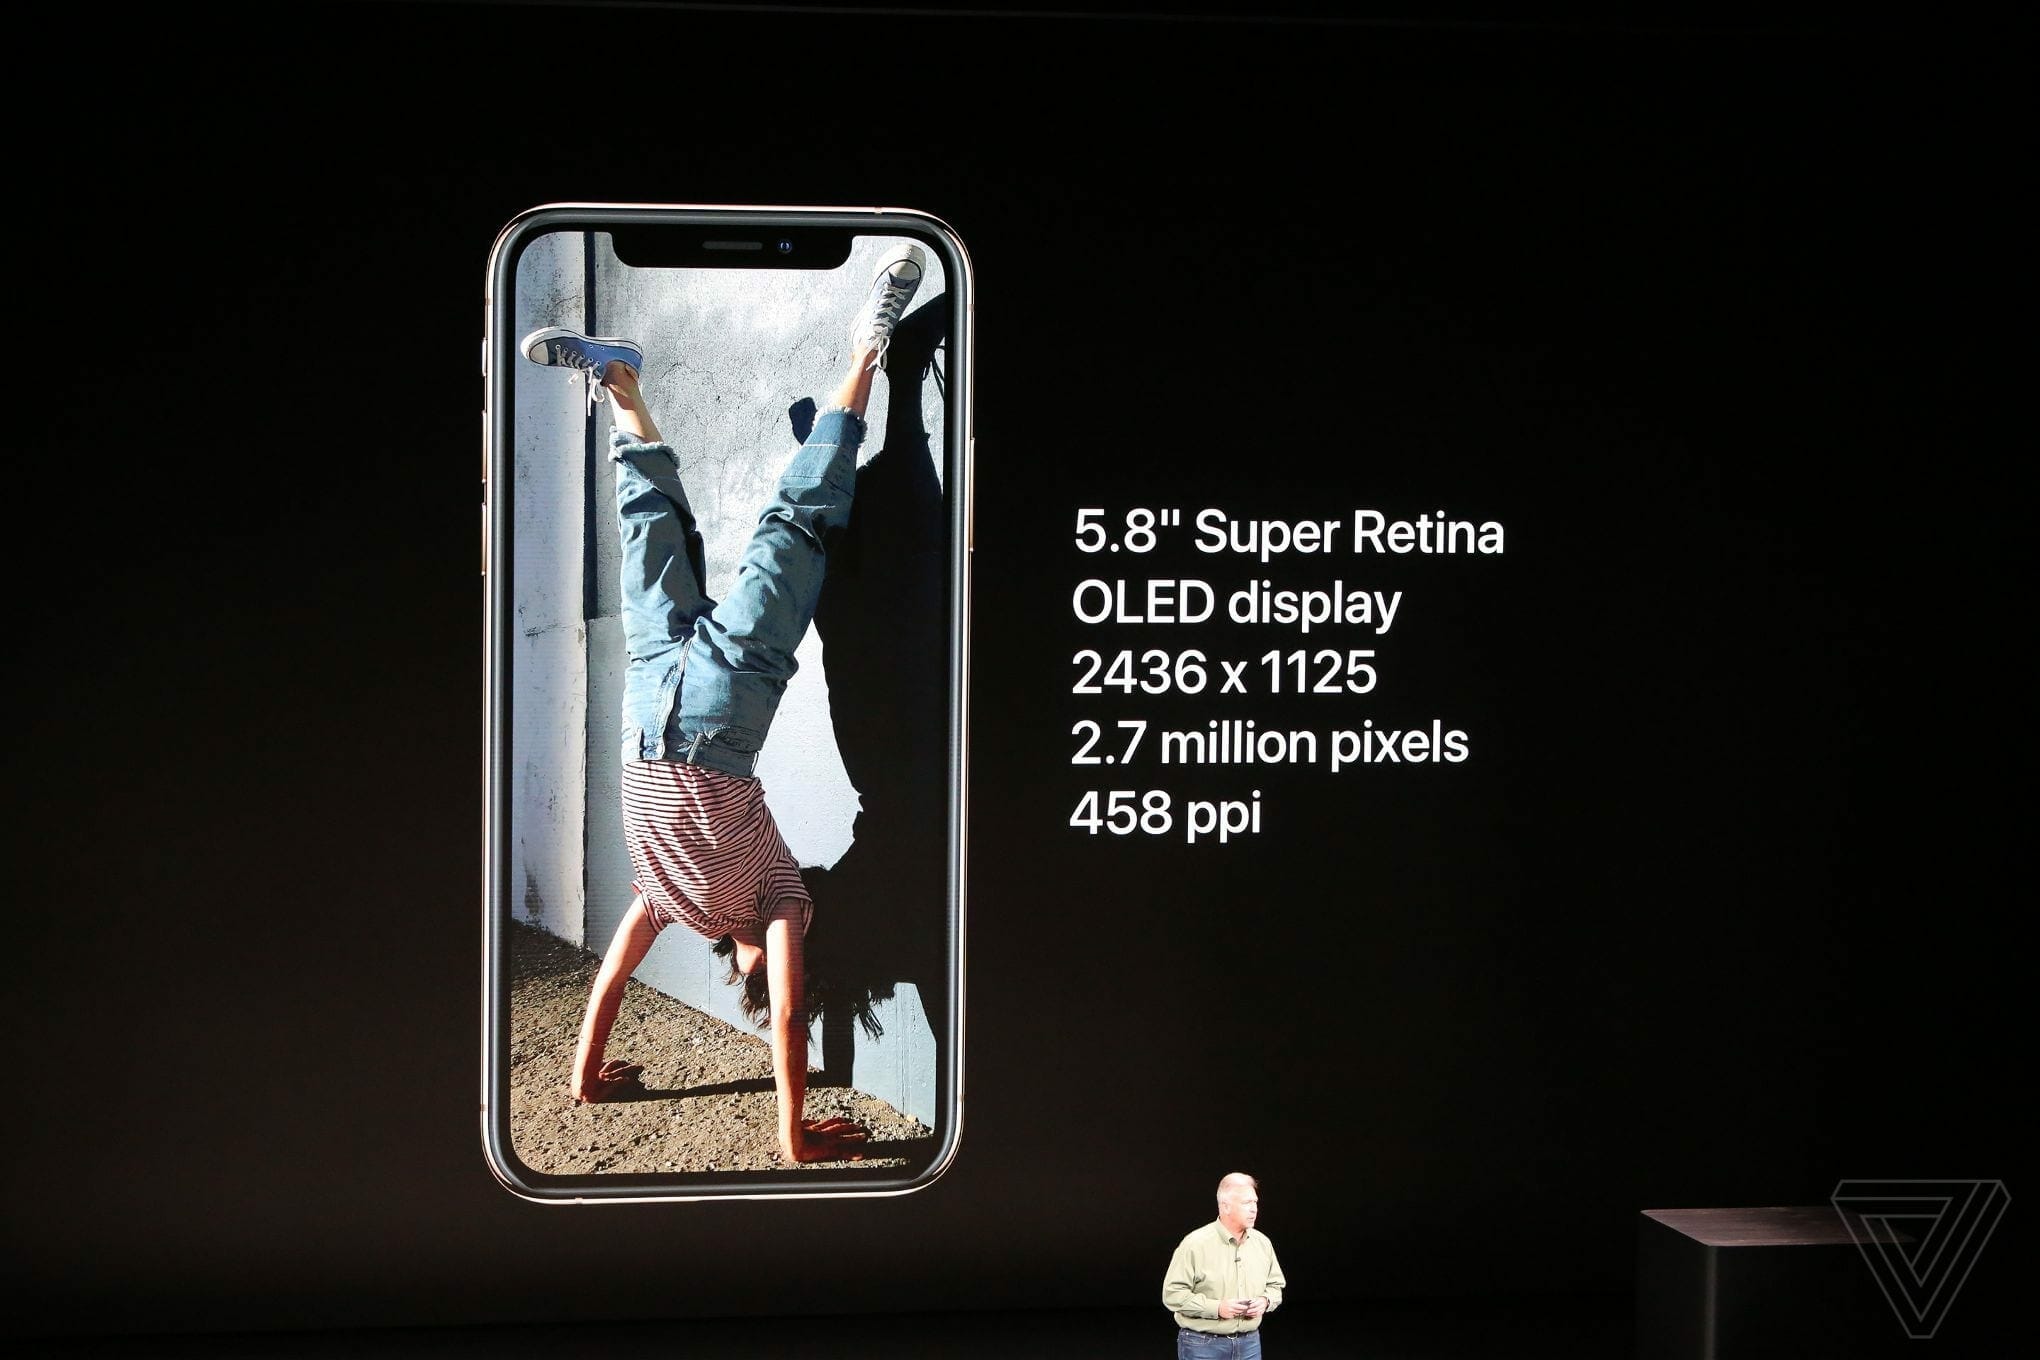 Apple iPhone XS Display Specs